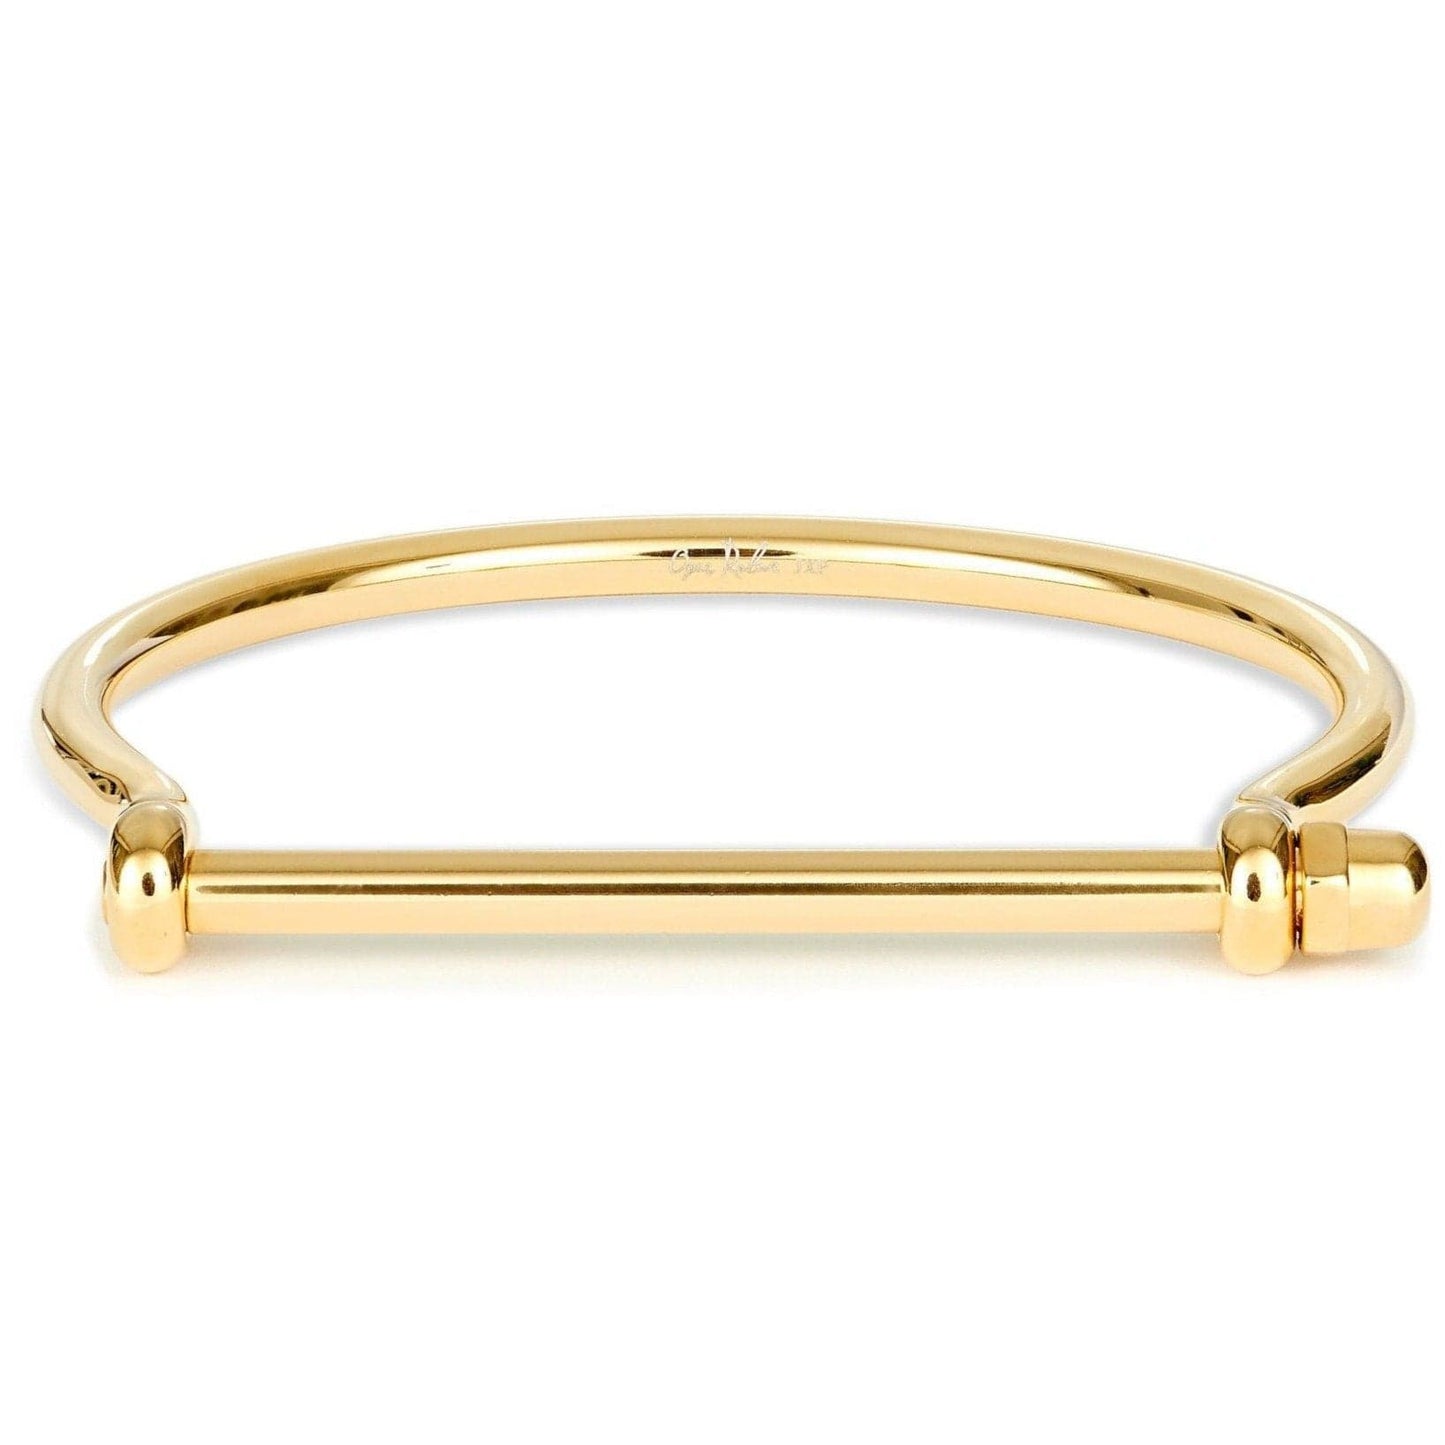 Opes Robur bracelet GOLD BEST SELLERS BUNDLE